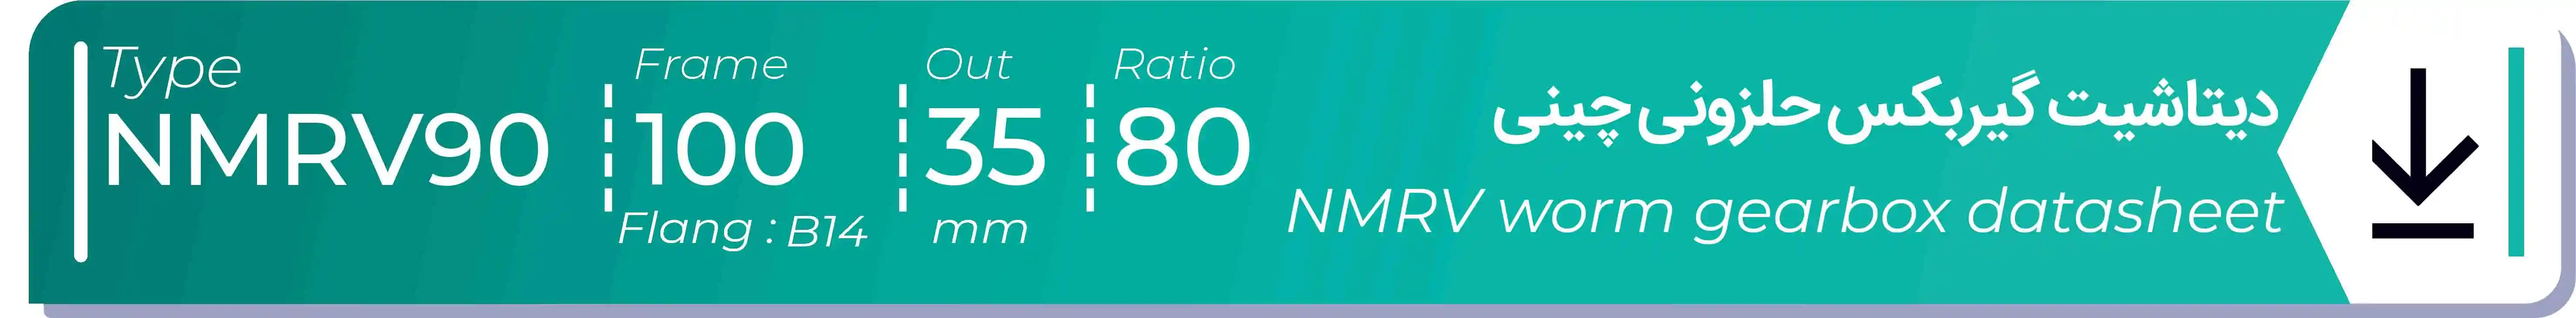  دیتاشیت و مشخصات فنی گیربکس حلزونی چینی   NMRV90  -  با خروجی 35- میلی متر و نسبت80 و فریم 100